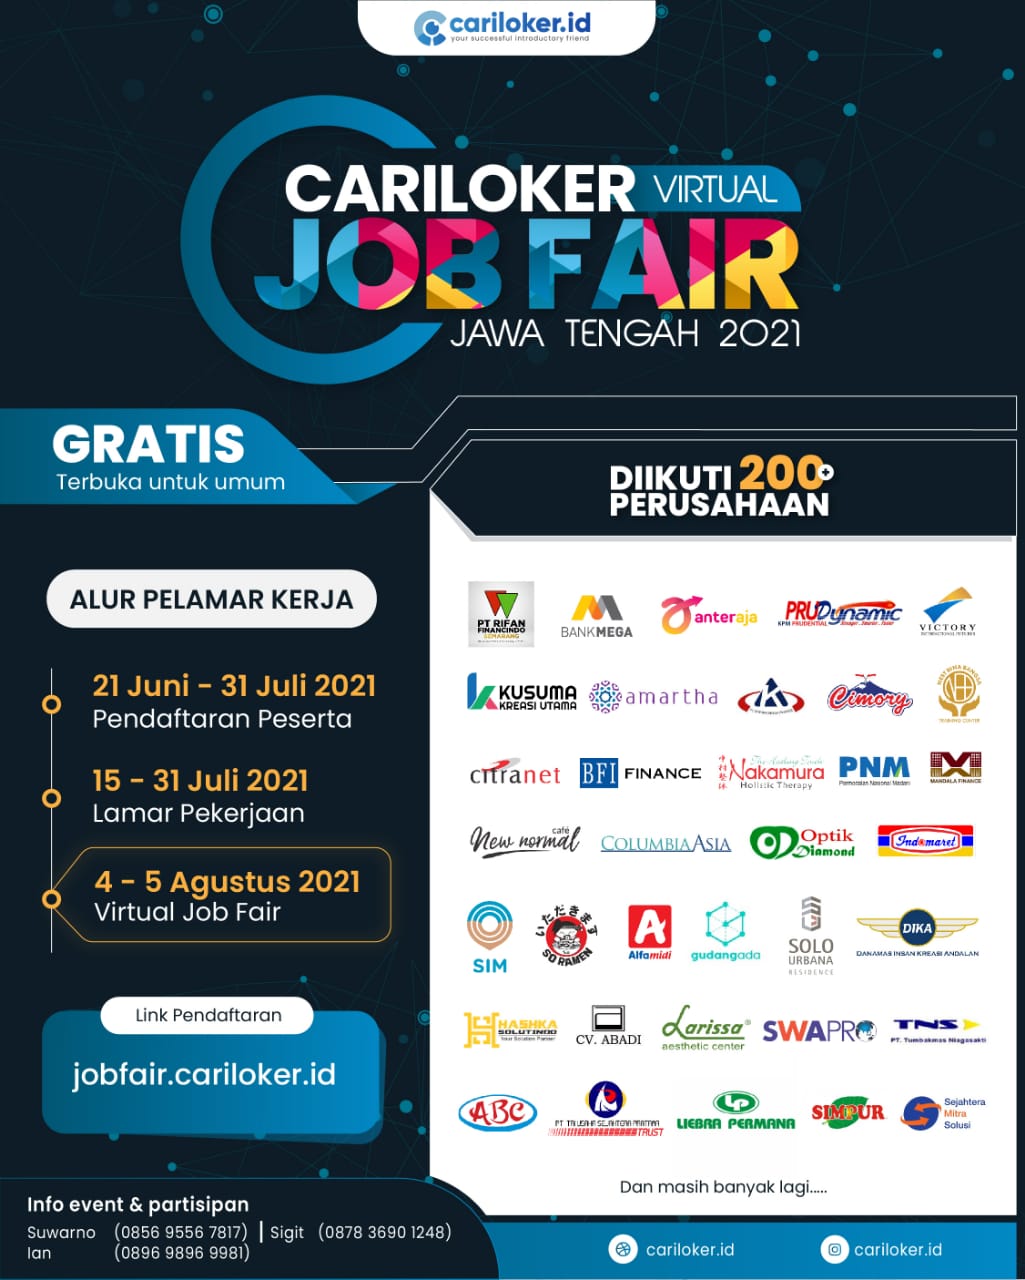 Terbuka lowongan pekerjaan dari 200 perusahaan yang akan digelar di Jawa Tengah. Acara bertajuk Cariloker Virtual Job Fair Jawa Tengah 2021